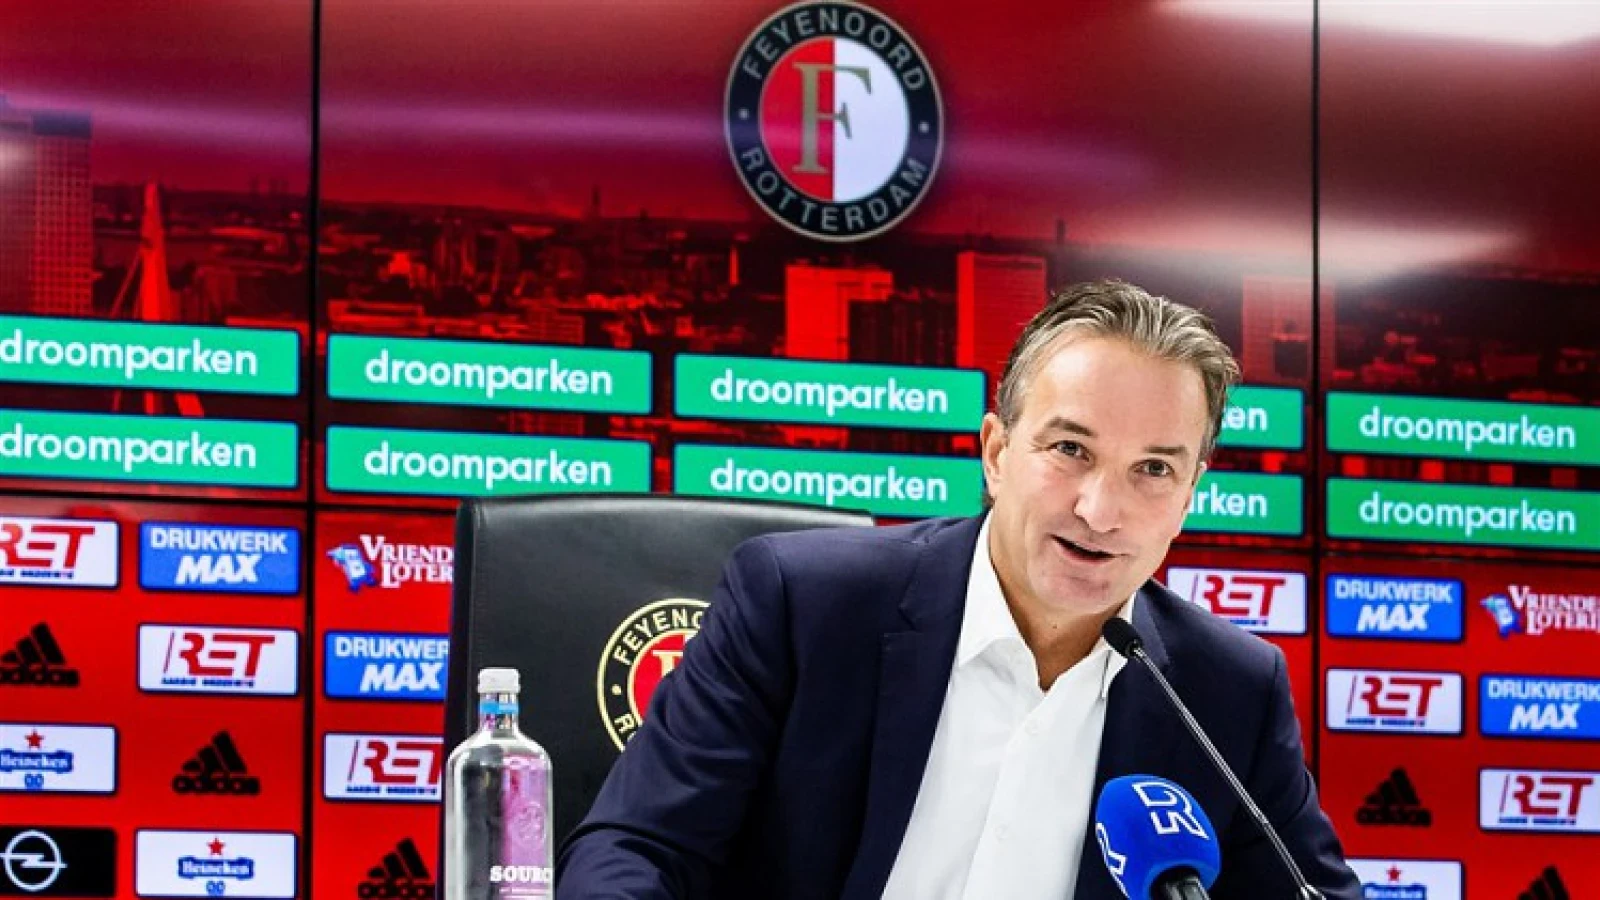 Koevermans bevestigt vertrek van Feyenoorder: 'Nagenoeg rond'